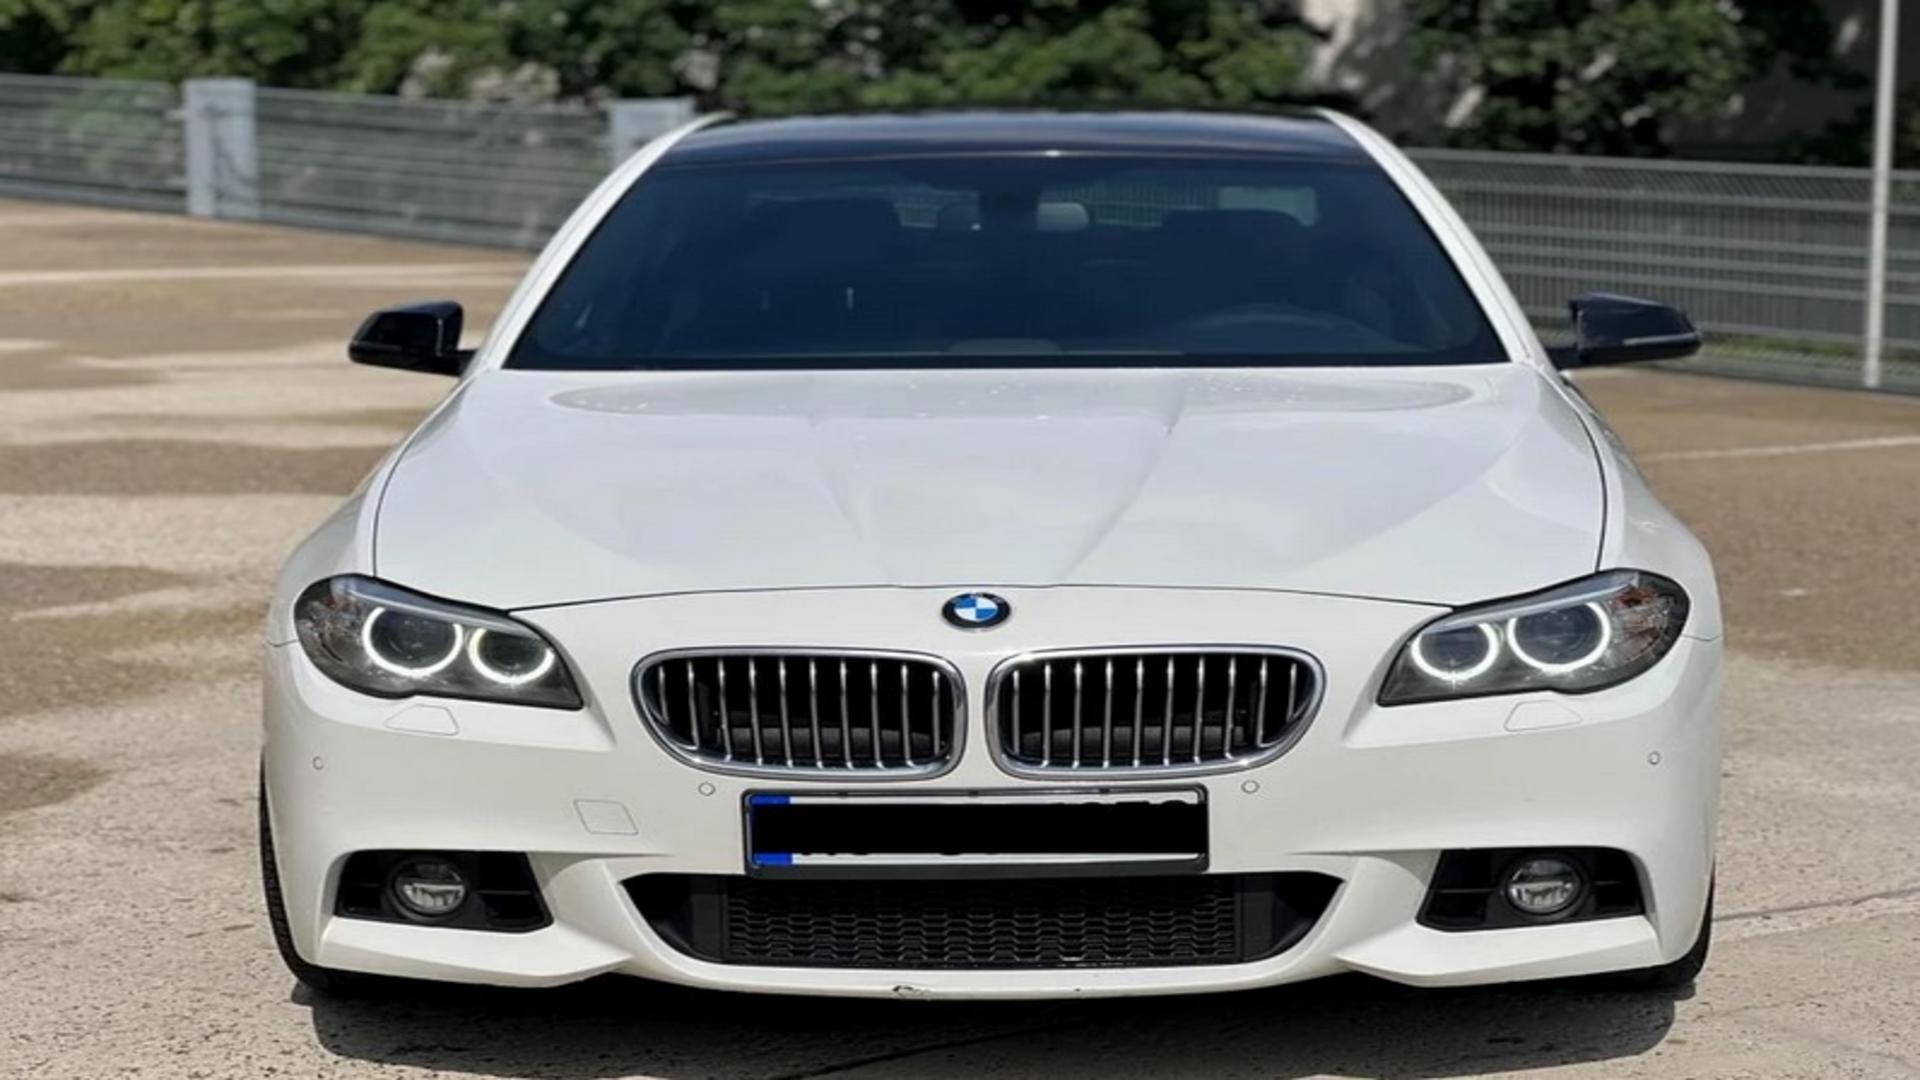 Un român a plătit 14.000 de euro pe un BMW din Germania. Când a mers să înscrie mașina, a urmat șocul!